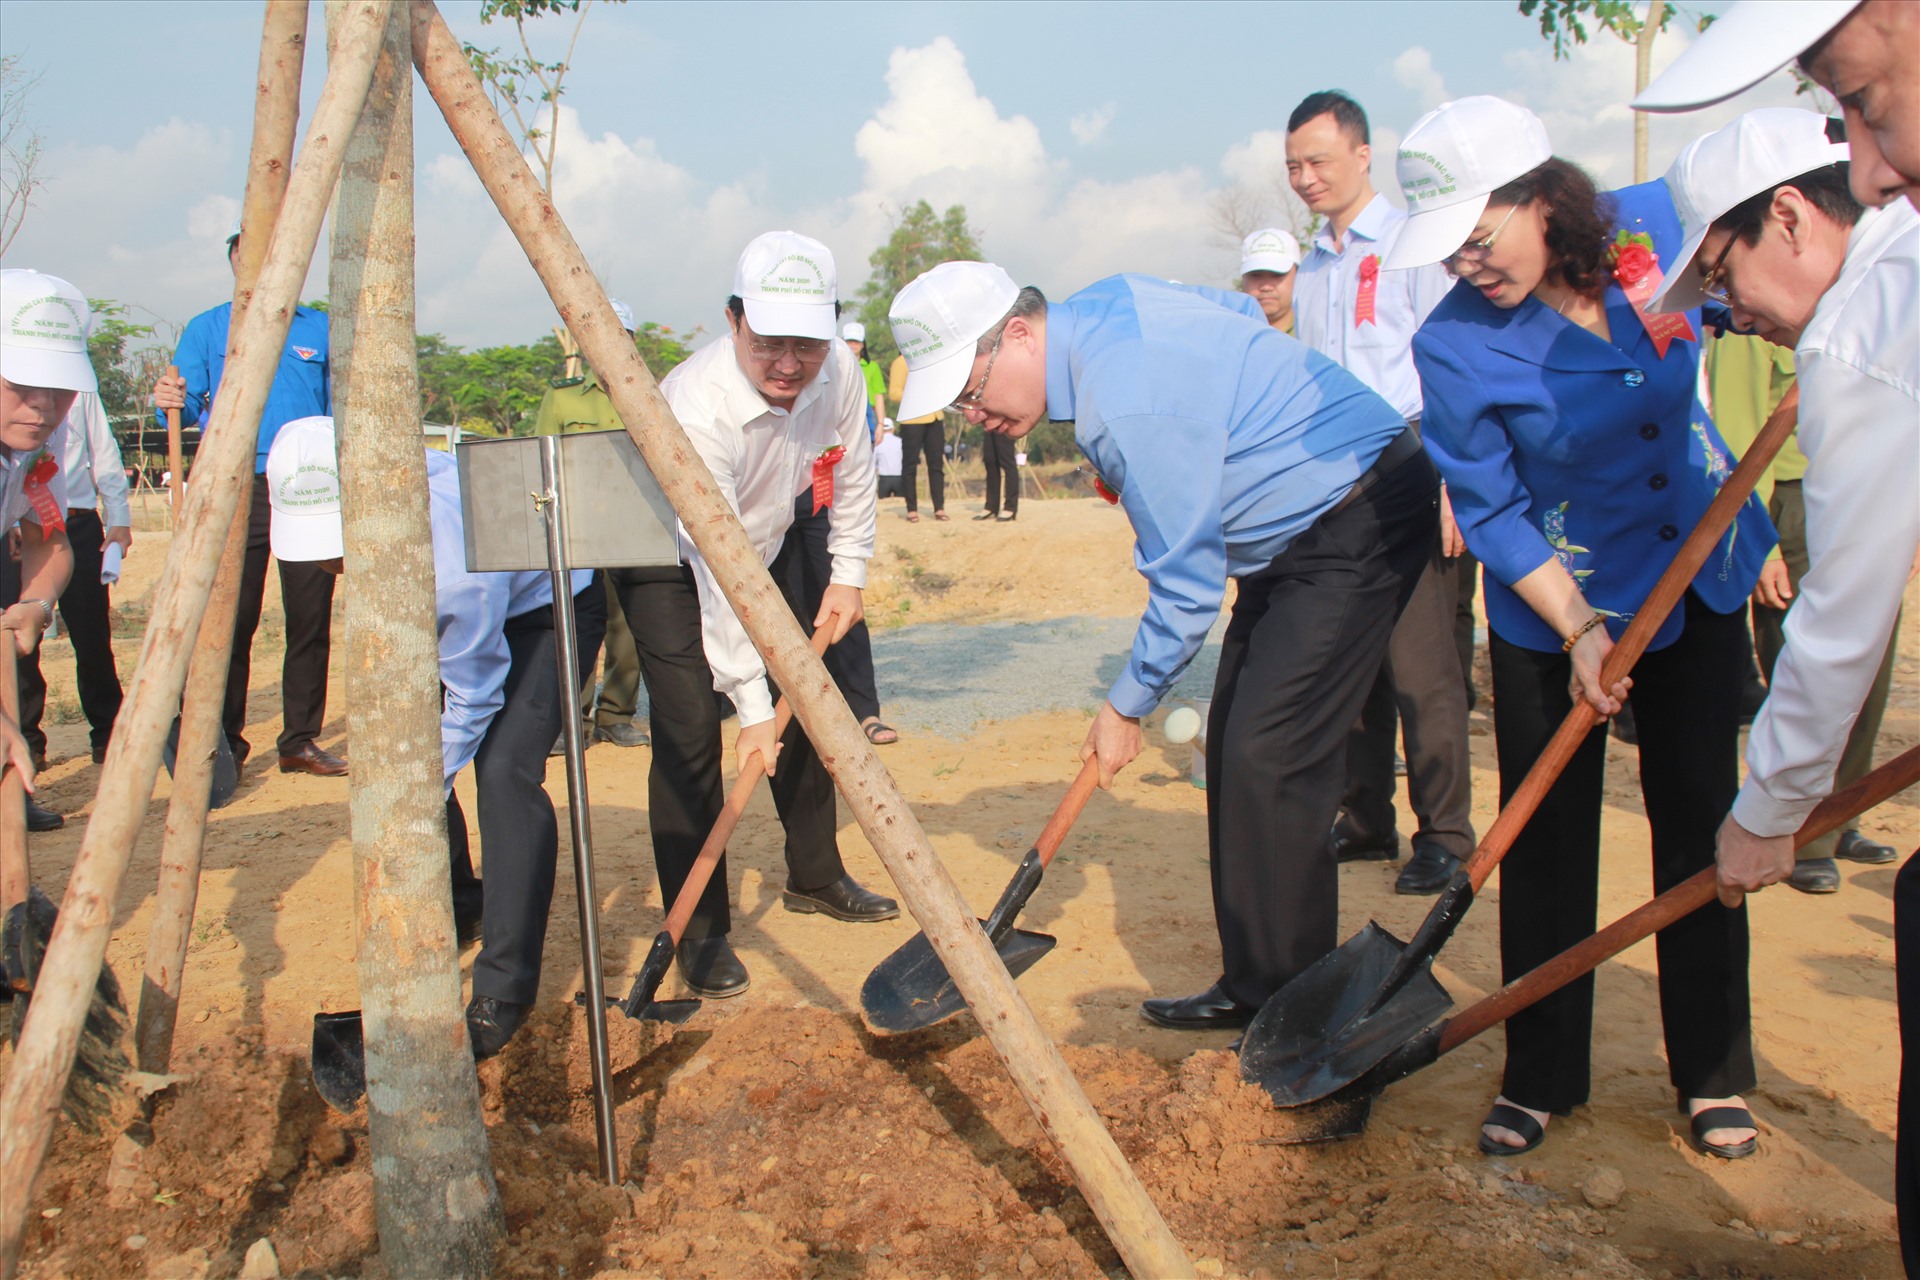 Bí thư Thành ủy TPHCM Nguyễn Thiện Nhân cùng các đại biểu trồng cây trong khuôn viên Đại học Kinh tế - Luật, Đại học Quốc gia TPHCM.   Ảnh: Ngô Tùng